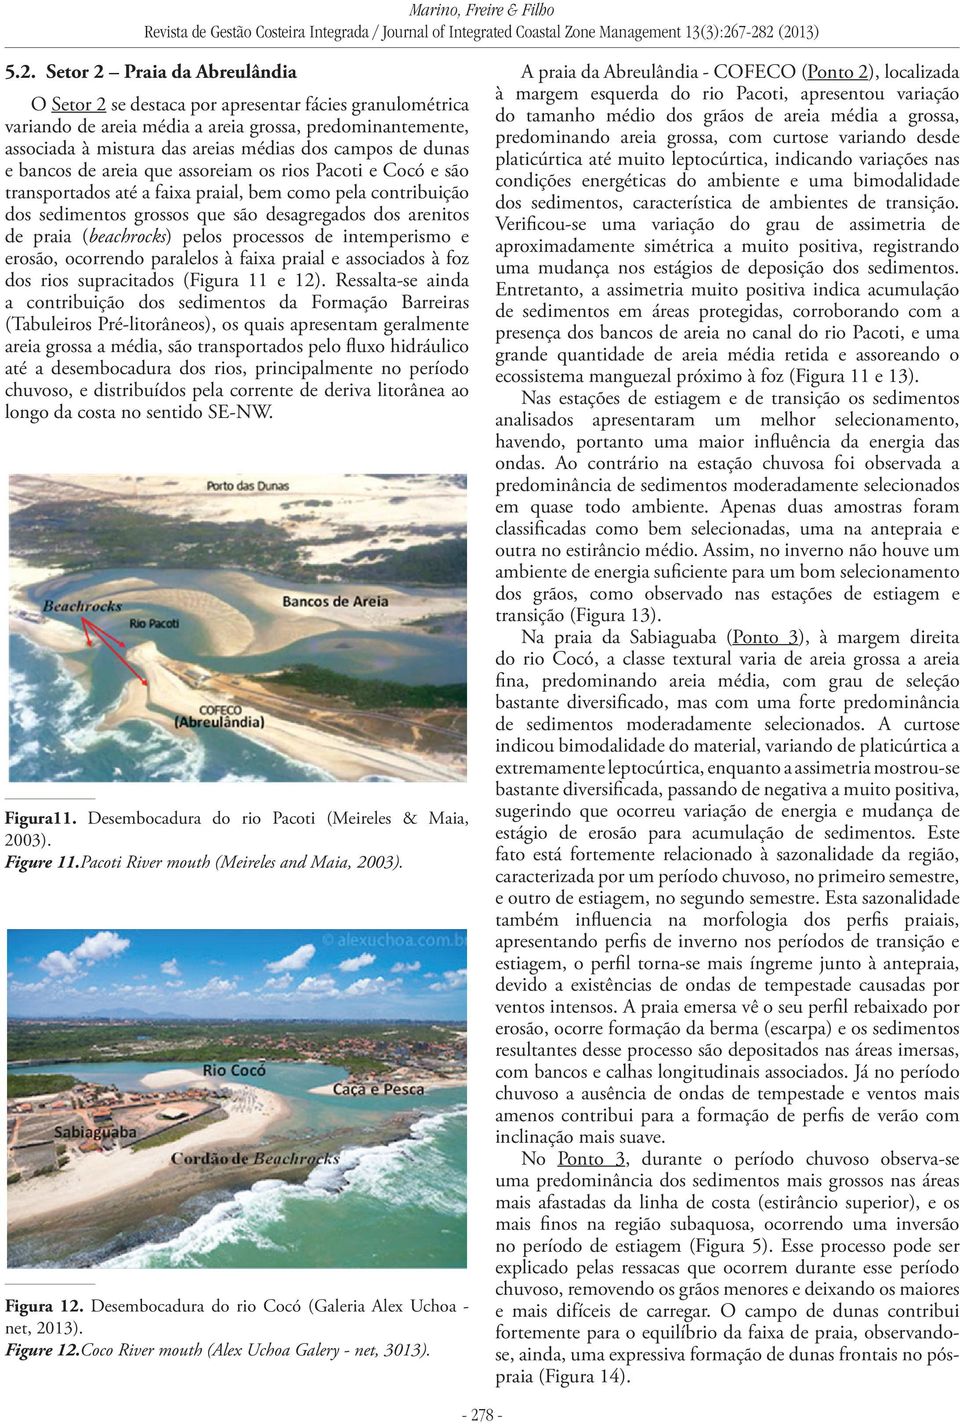 (beachrocks) pelos processos de intemperismo e erosão, ocorrendo paralelos à faixa praial e associados à foz dos rios supracitados (Figura 11 e 12).